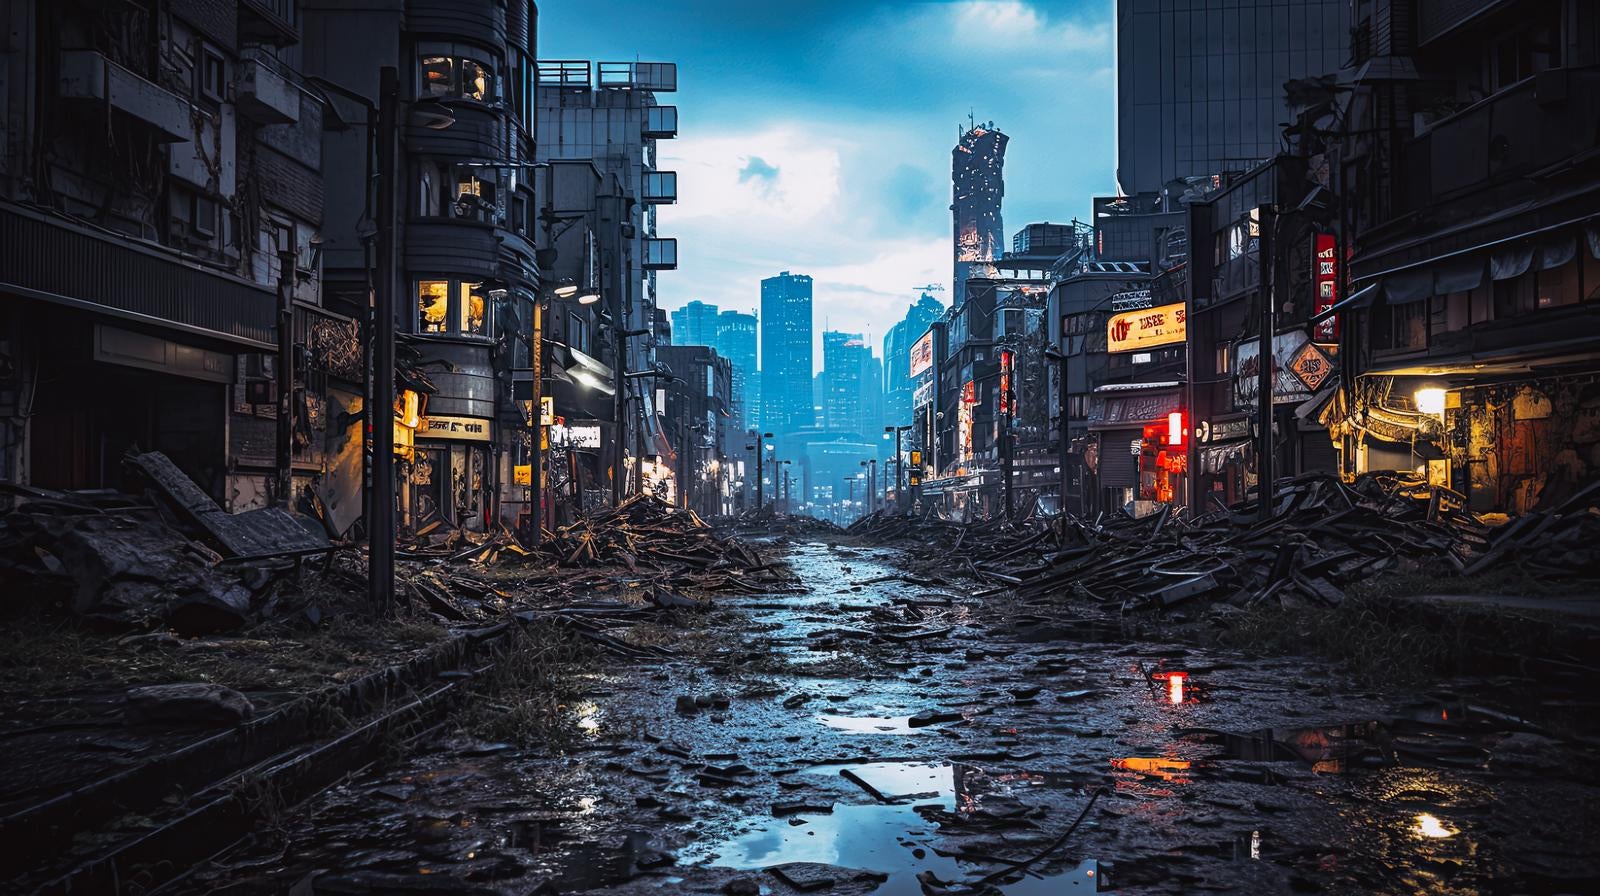 「瓦礫と崩壊した都市景観」の写真